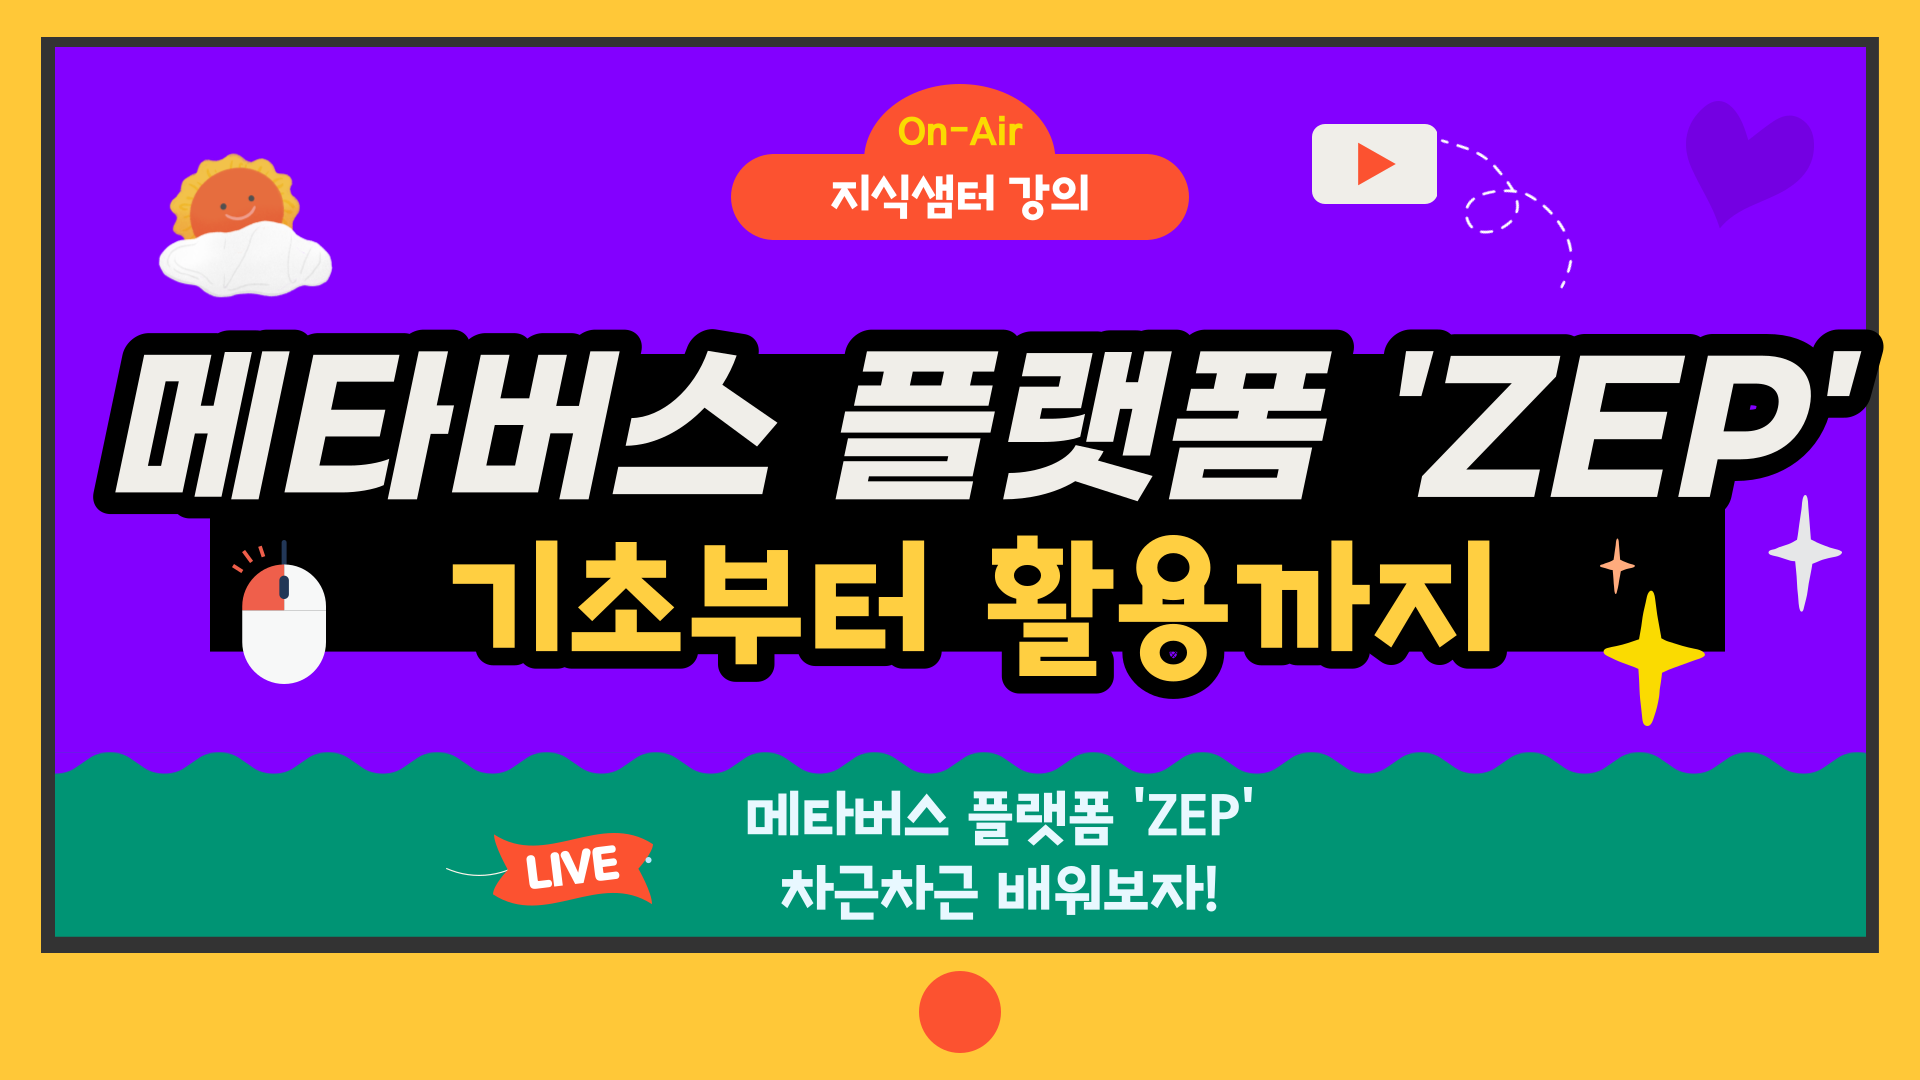 메타버스 플랫폼 'ZEP' 기초부터 활용까지 2기